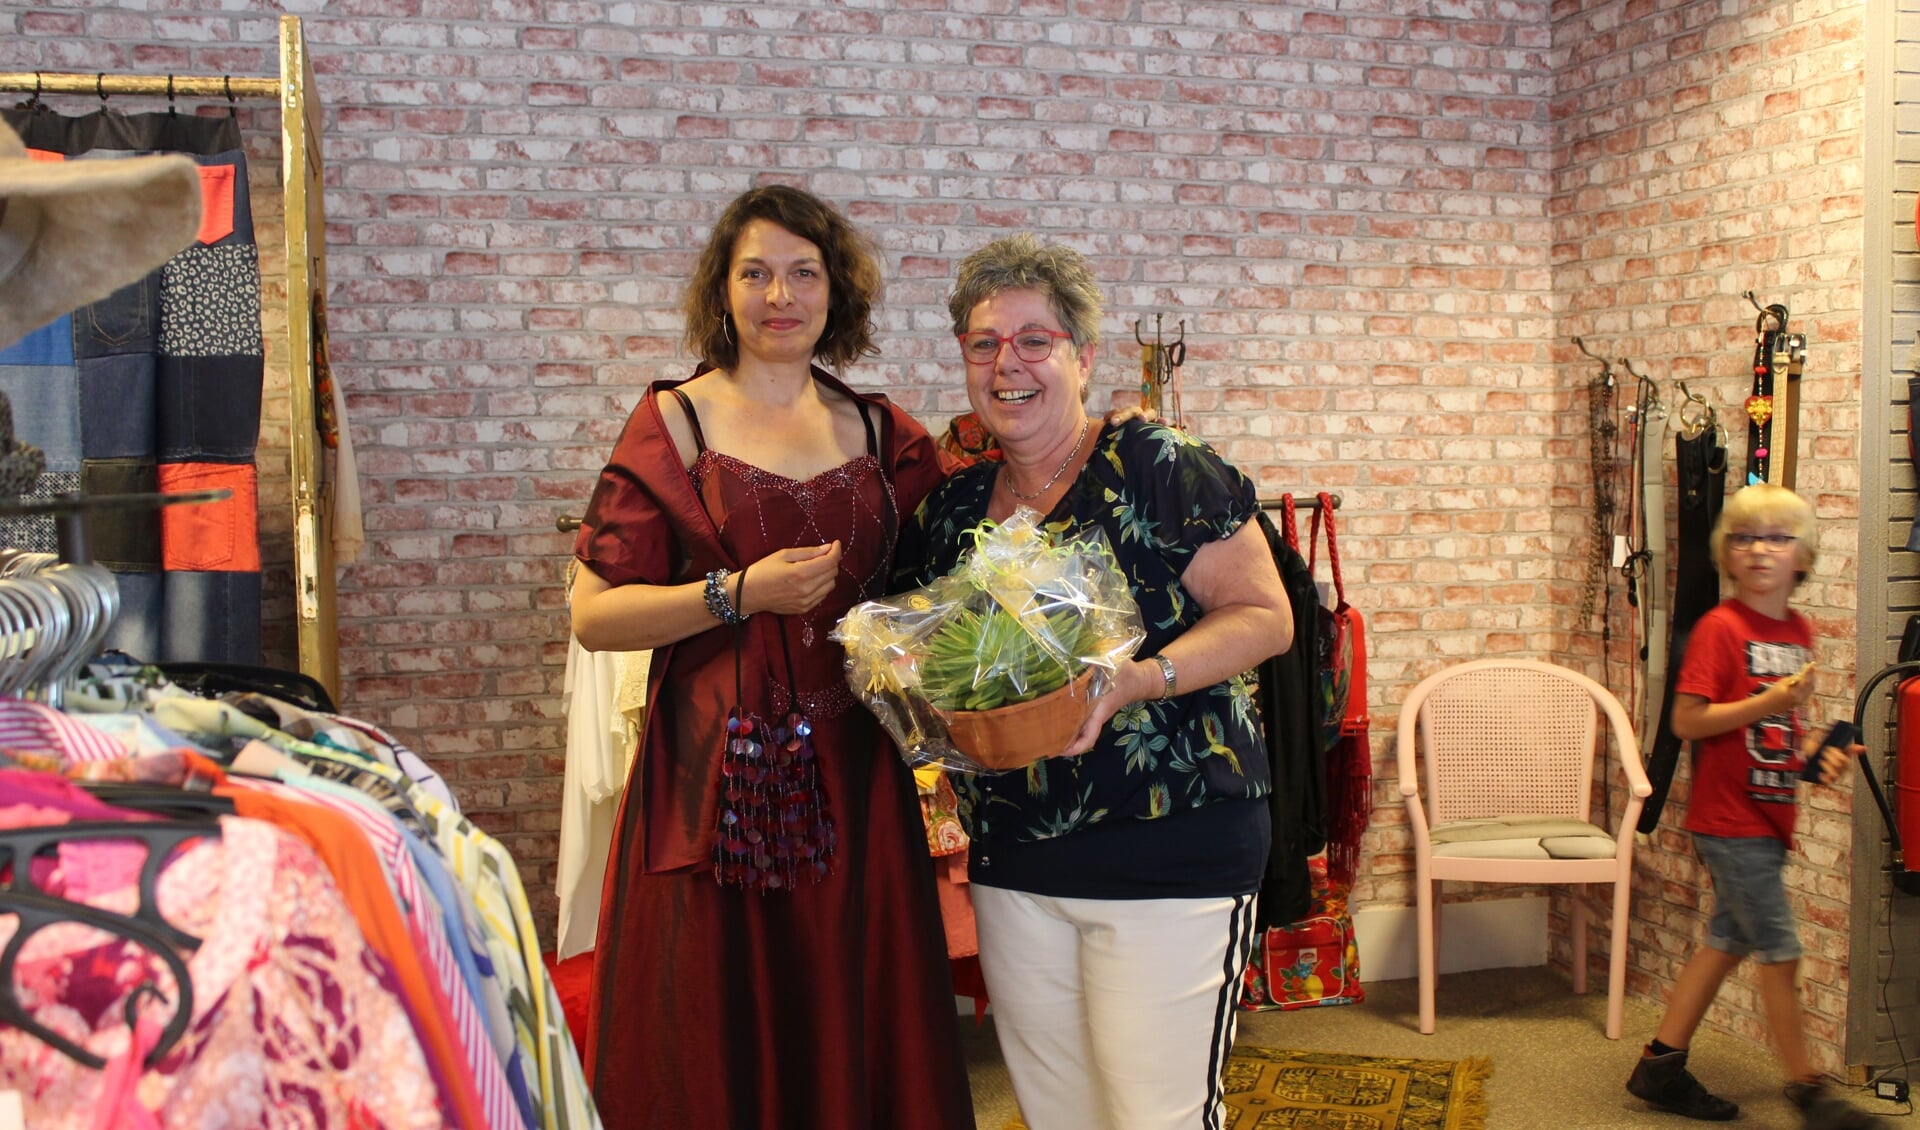 Marina Fidder van gemeente Steenbergen past een galajurk in De Ontmoetingswinkel van Rian Liefhebber.